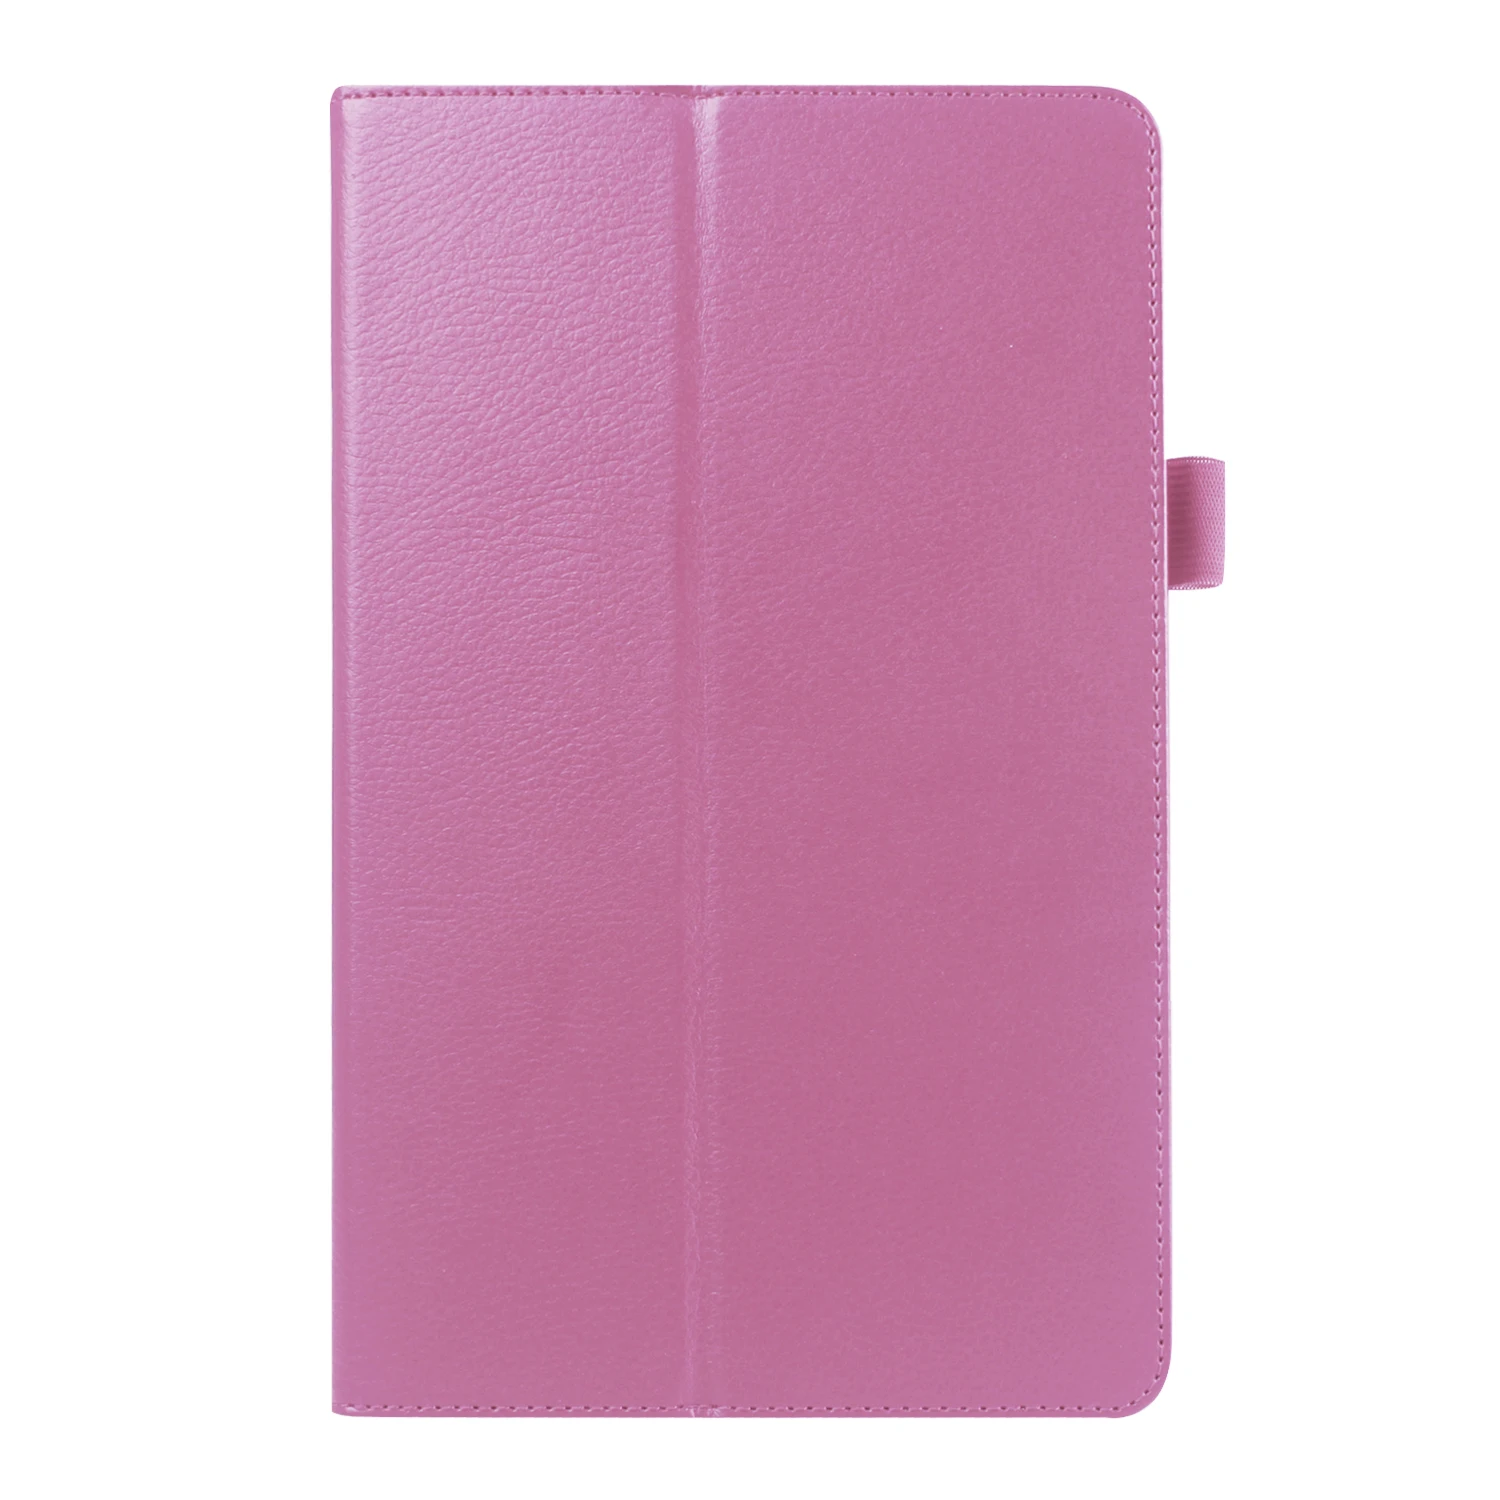 Личи из искусственной кожи чехол для samsung Galaxy Note 8,0 GT-N5100 N5110 умный чехол для samsung Note 8,0 N5110 чехол для планшета+ пленка+ ручка - Цвет: pink